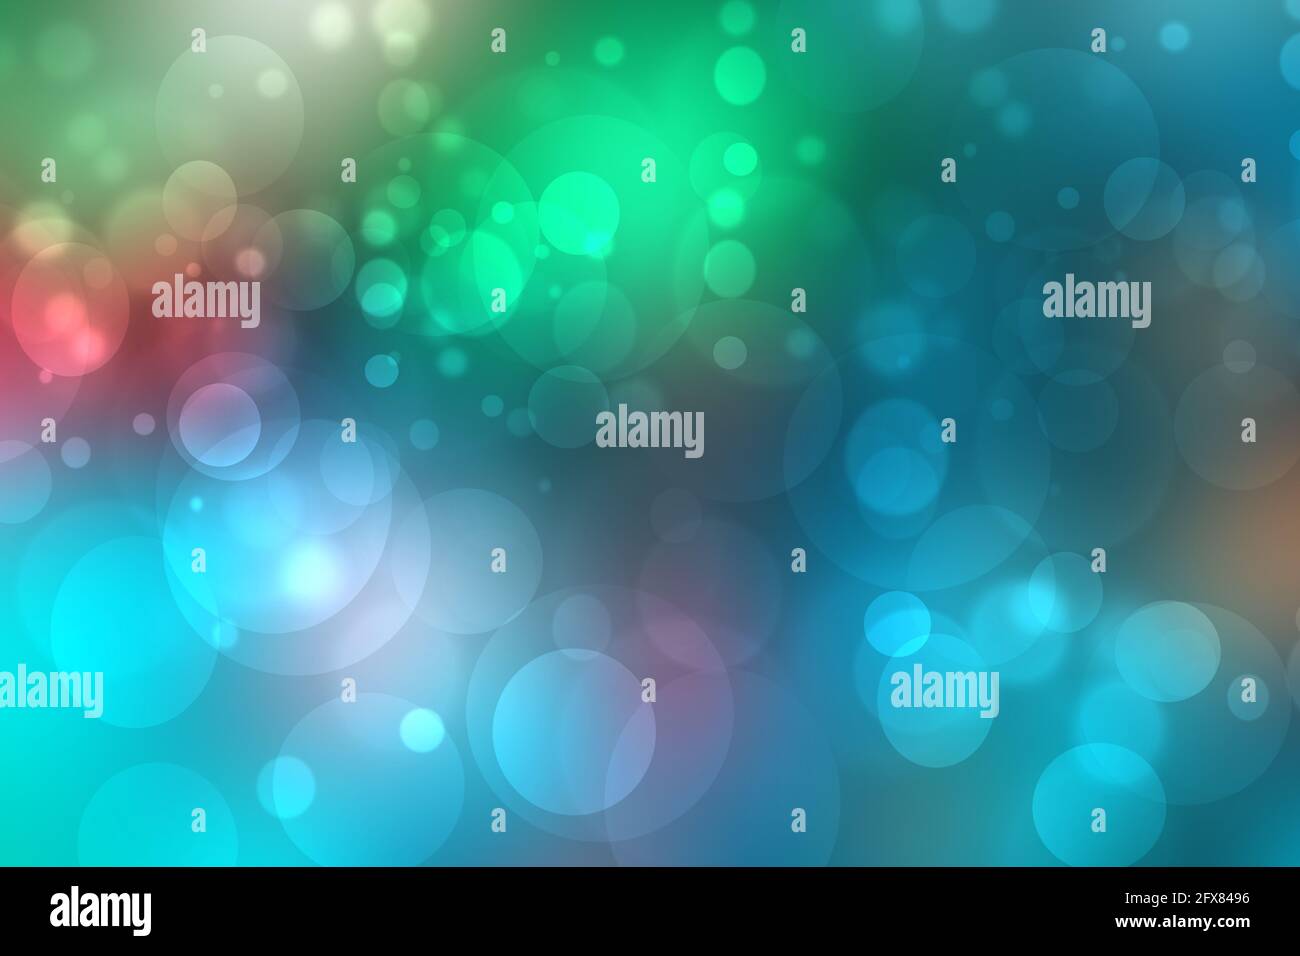 Bạn đang tìm kiếm một phong cách mới cho hình nền trang web của mình? Hãy khám phá ngay ảnh liên quan đến từ khóa Abstract gradient light green blue pastel shiny blurred background. Với sự kết hợp táo bạo giữa các màu sắc và hiệu ứng mờ, bạn sẽ có được một lựa chọn đầy sáng tạo.